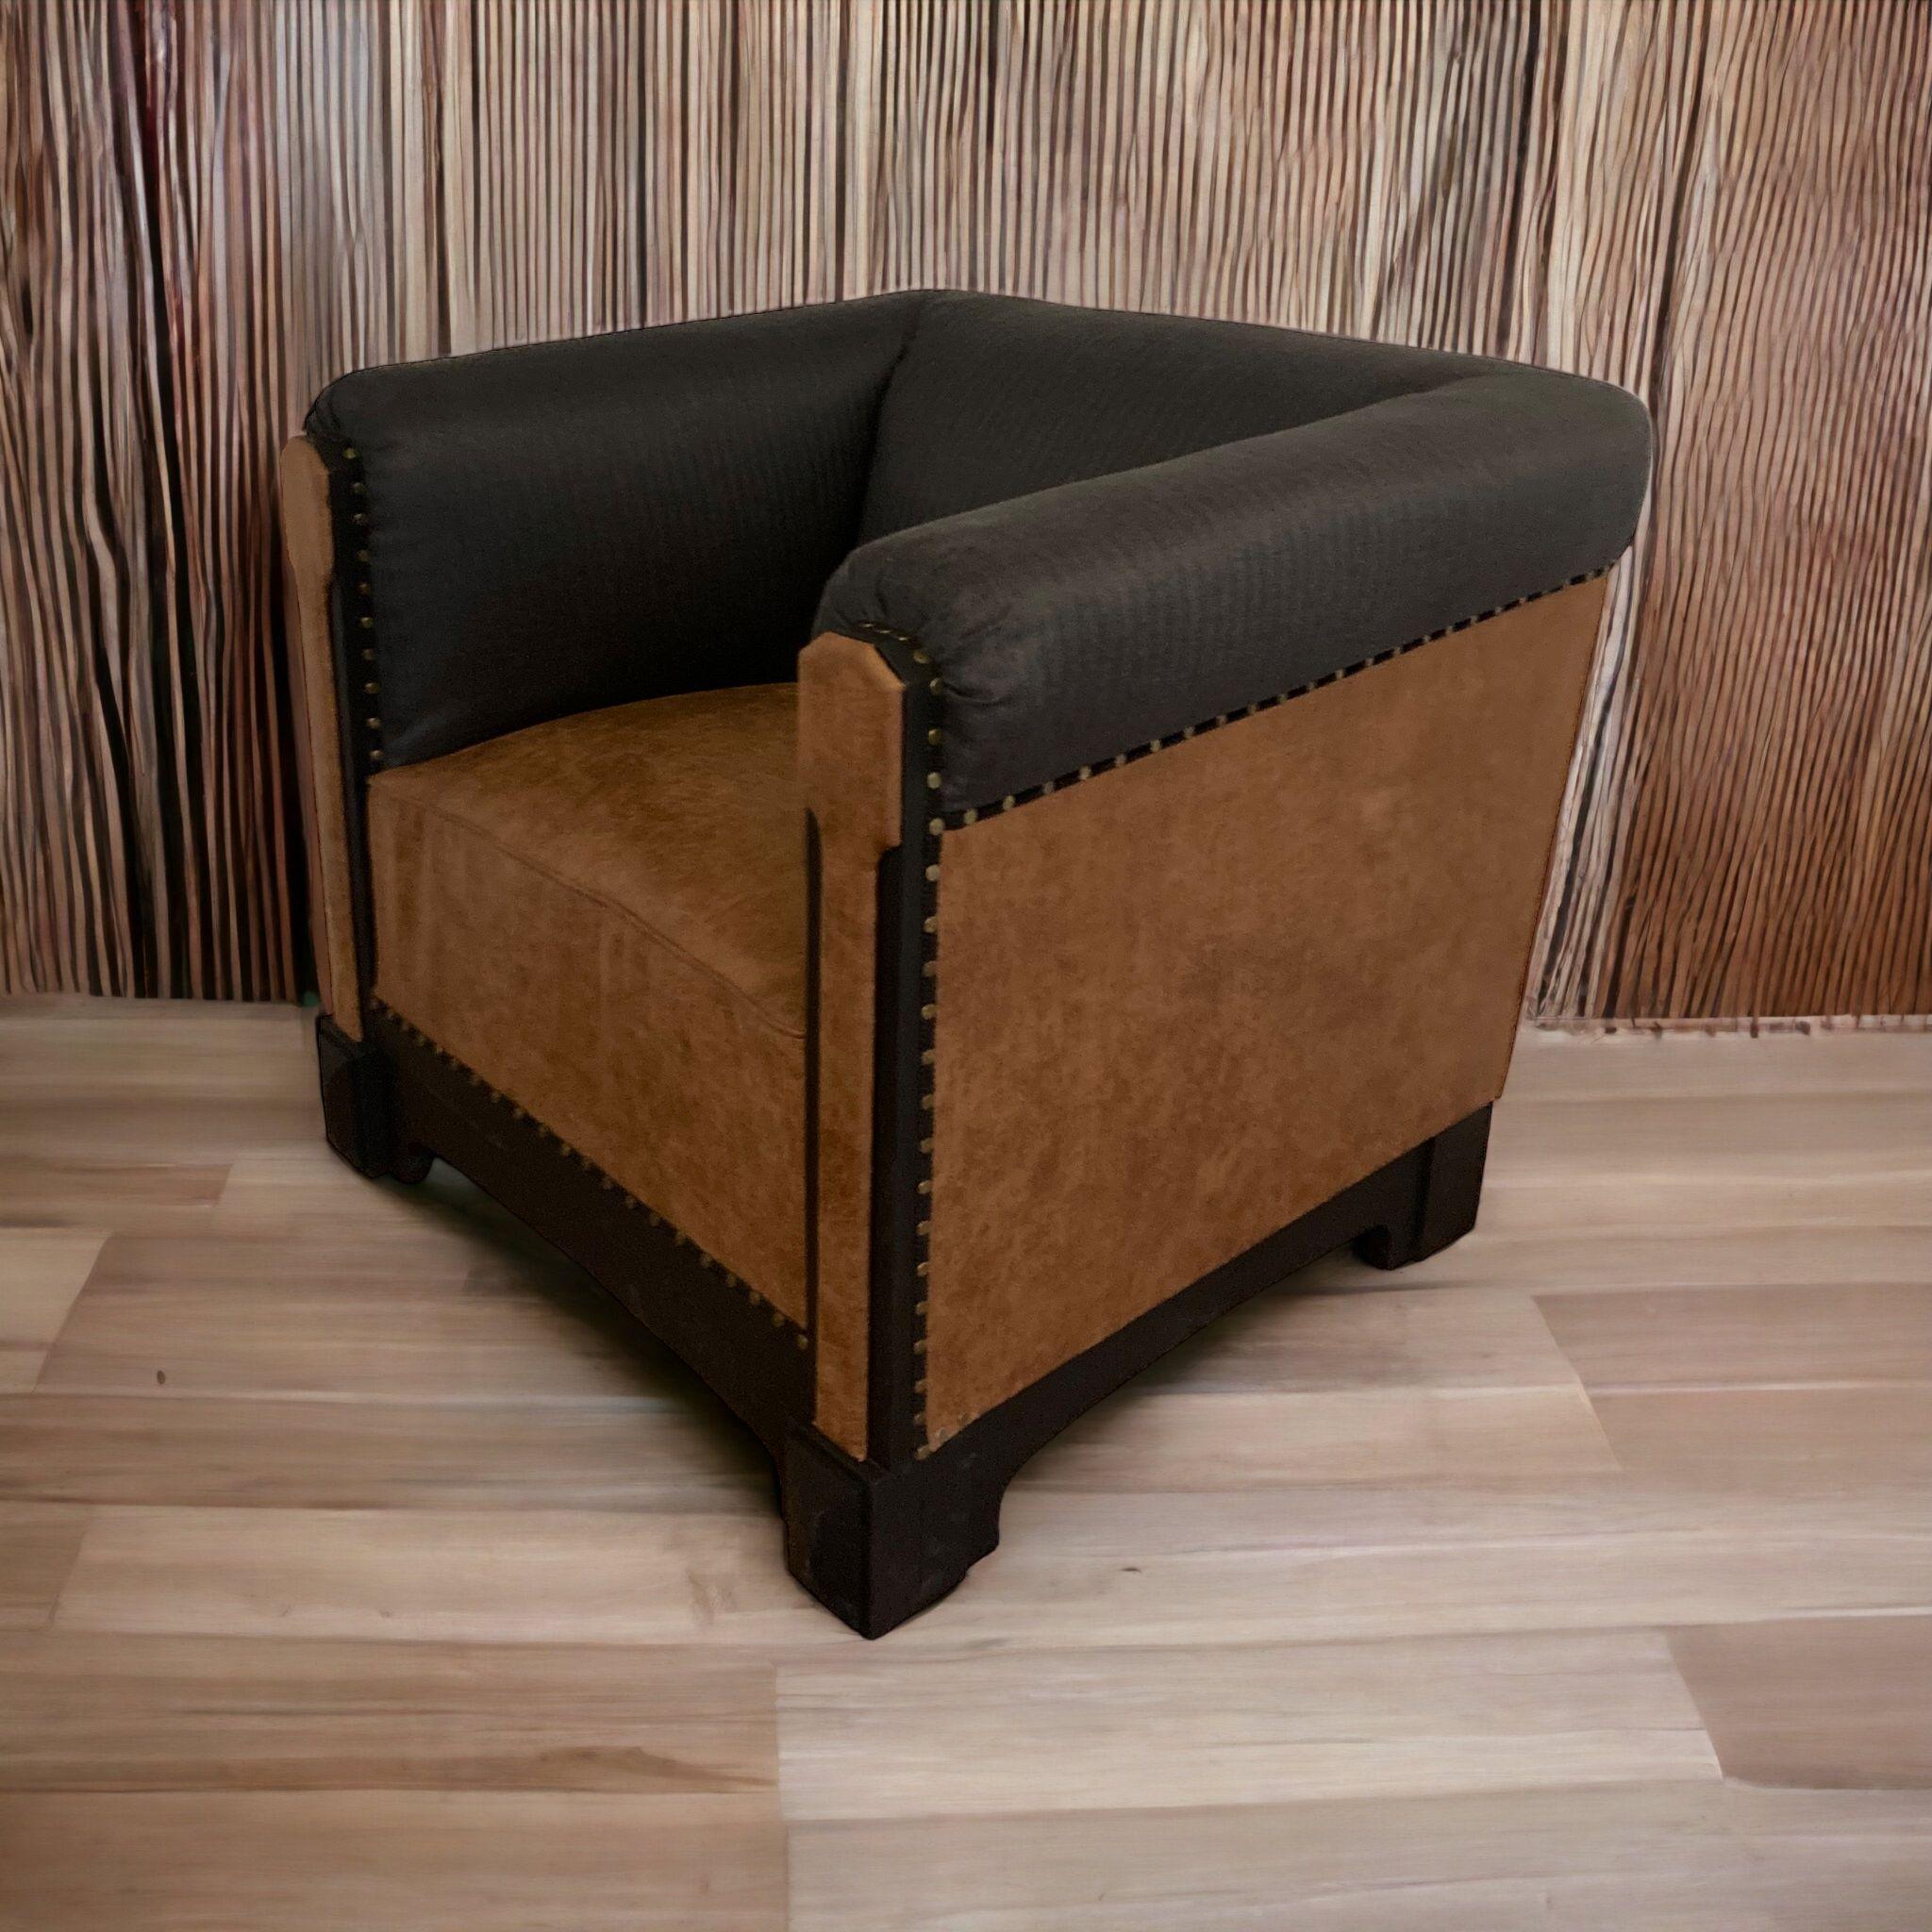 Rare fauteuil club français Art déco du 19e siècle. D'origine parisienne, cette chaise a été professionnellement restaurée avec une assise en similicuir et des côtés recouverts d'un tissu tweed à chevrons. Il a été retapissé avec goût pour devenir